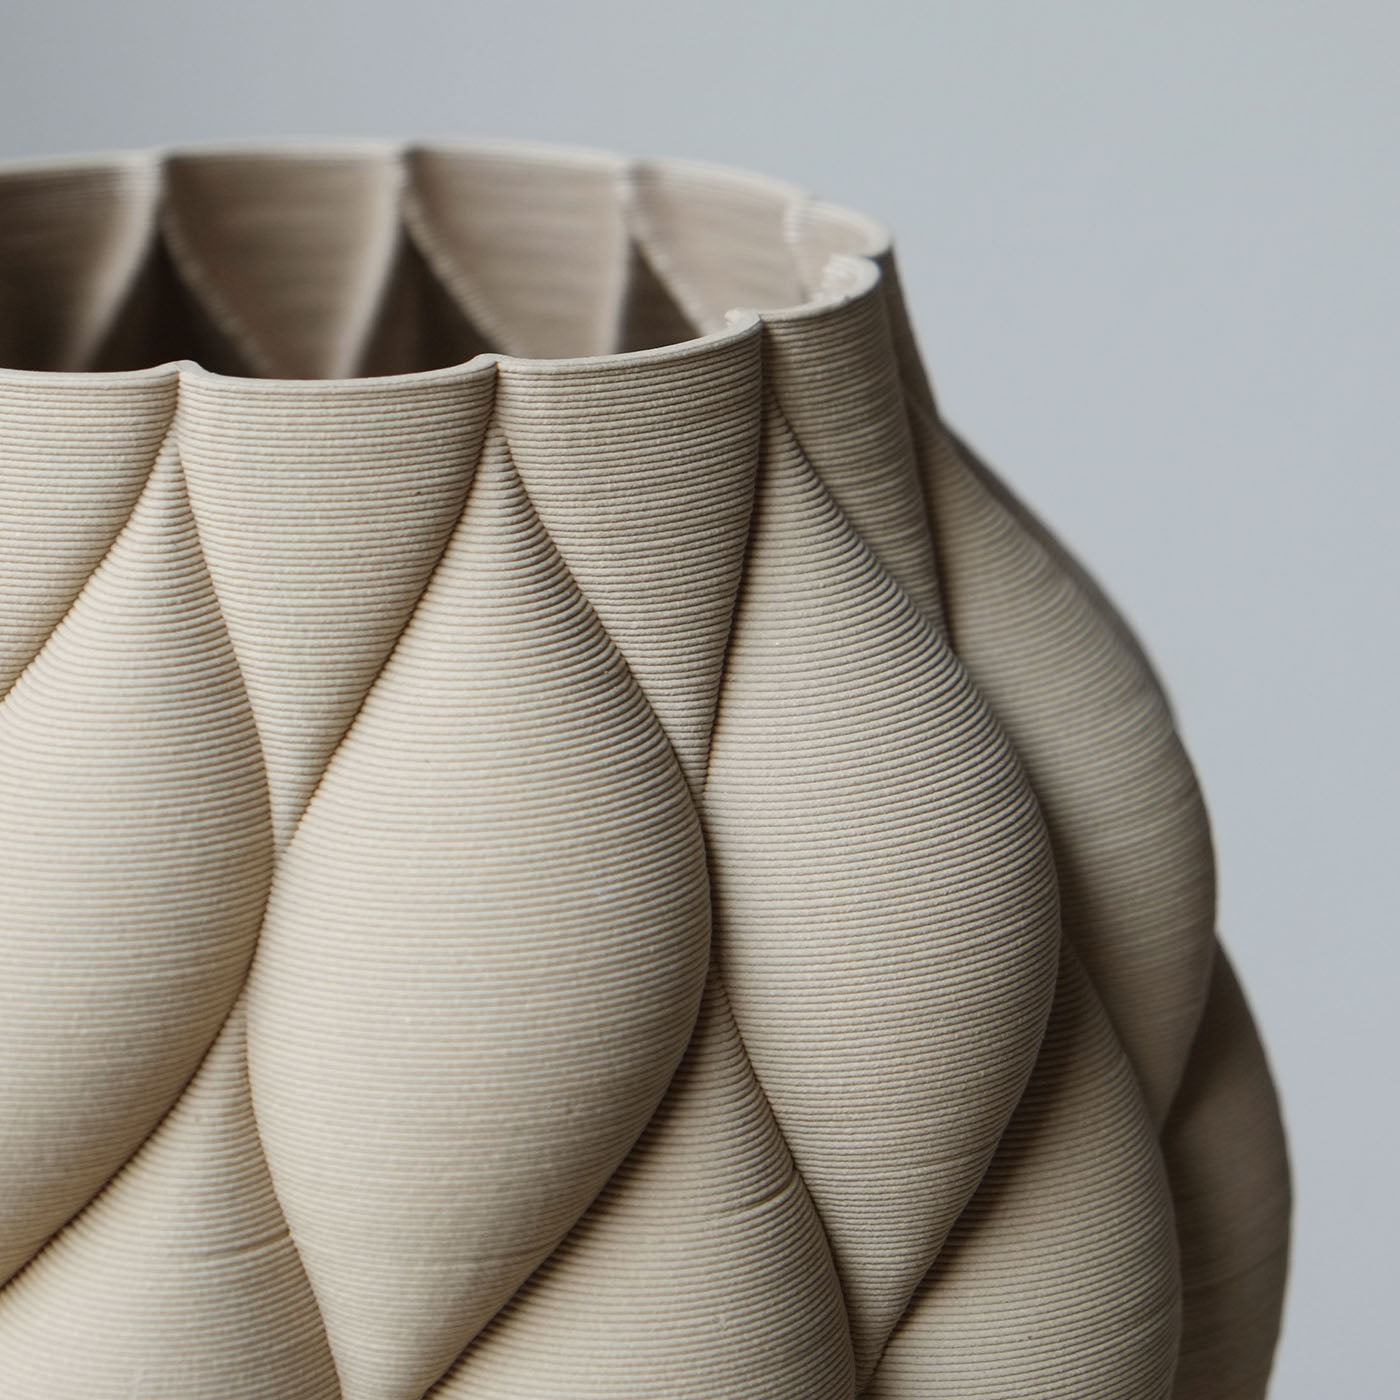 Mumbai Ceramic Vase - Alternative view 1